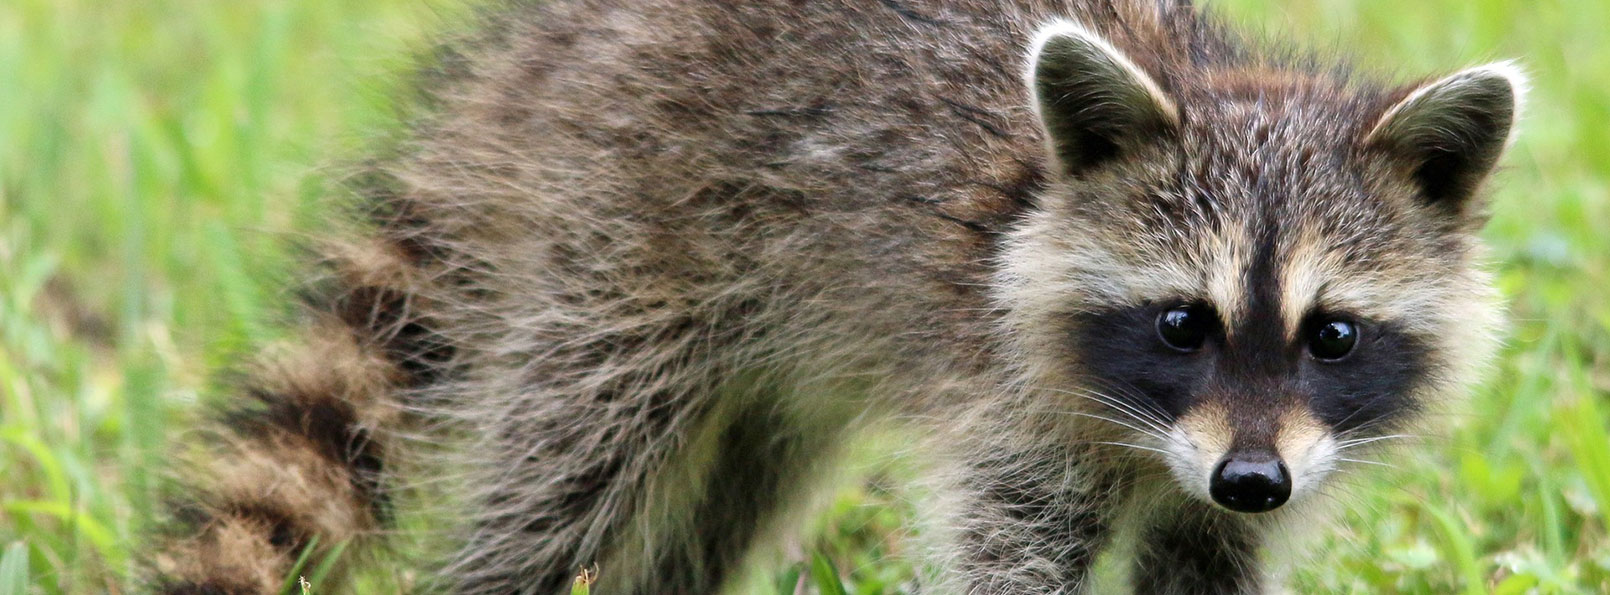 juvenile raccoon